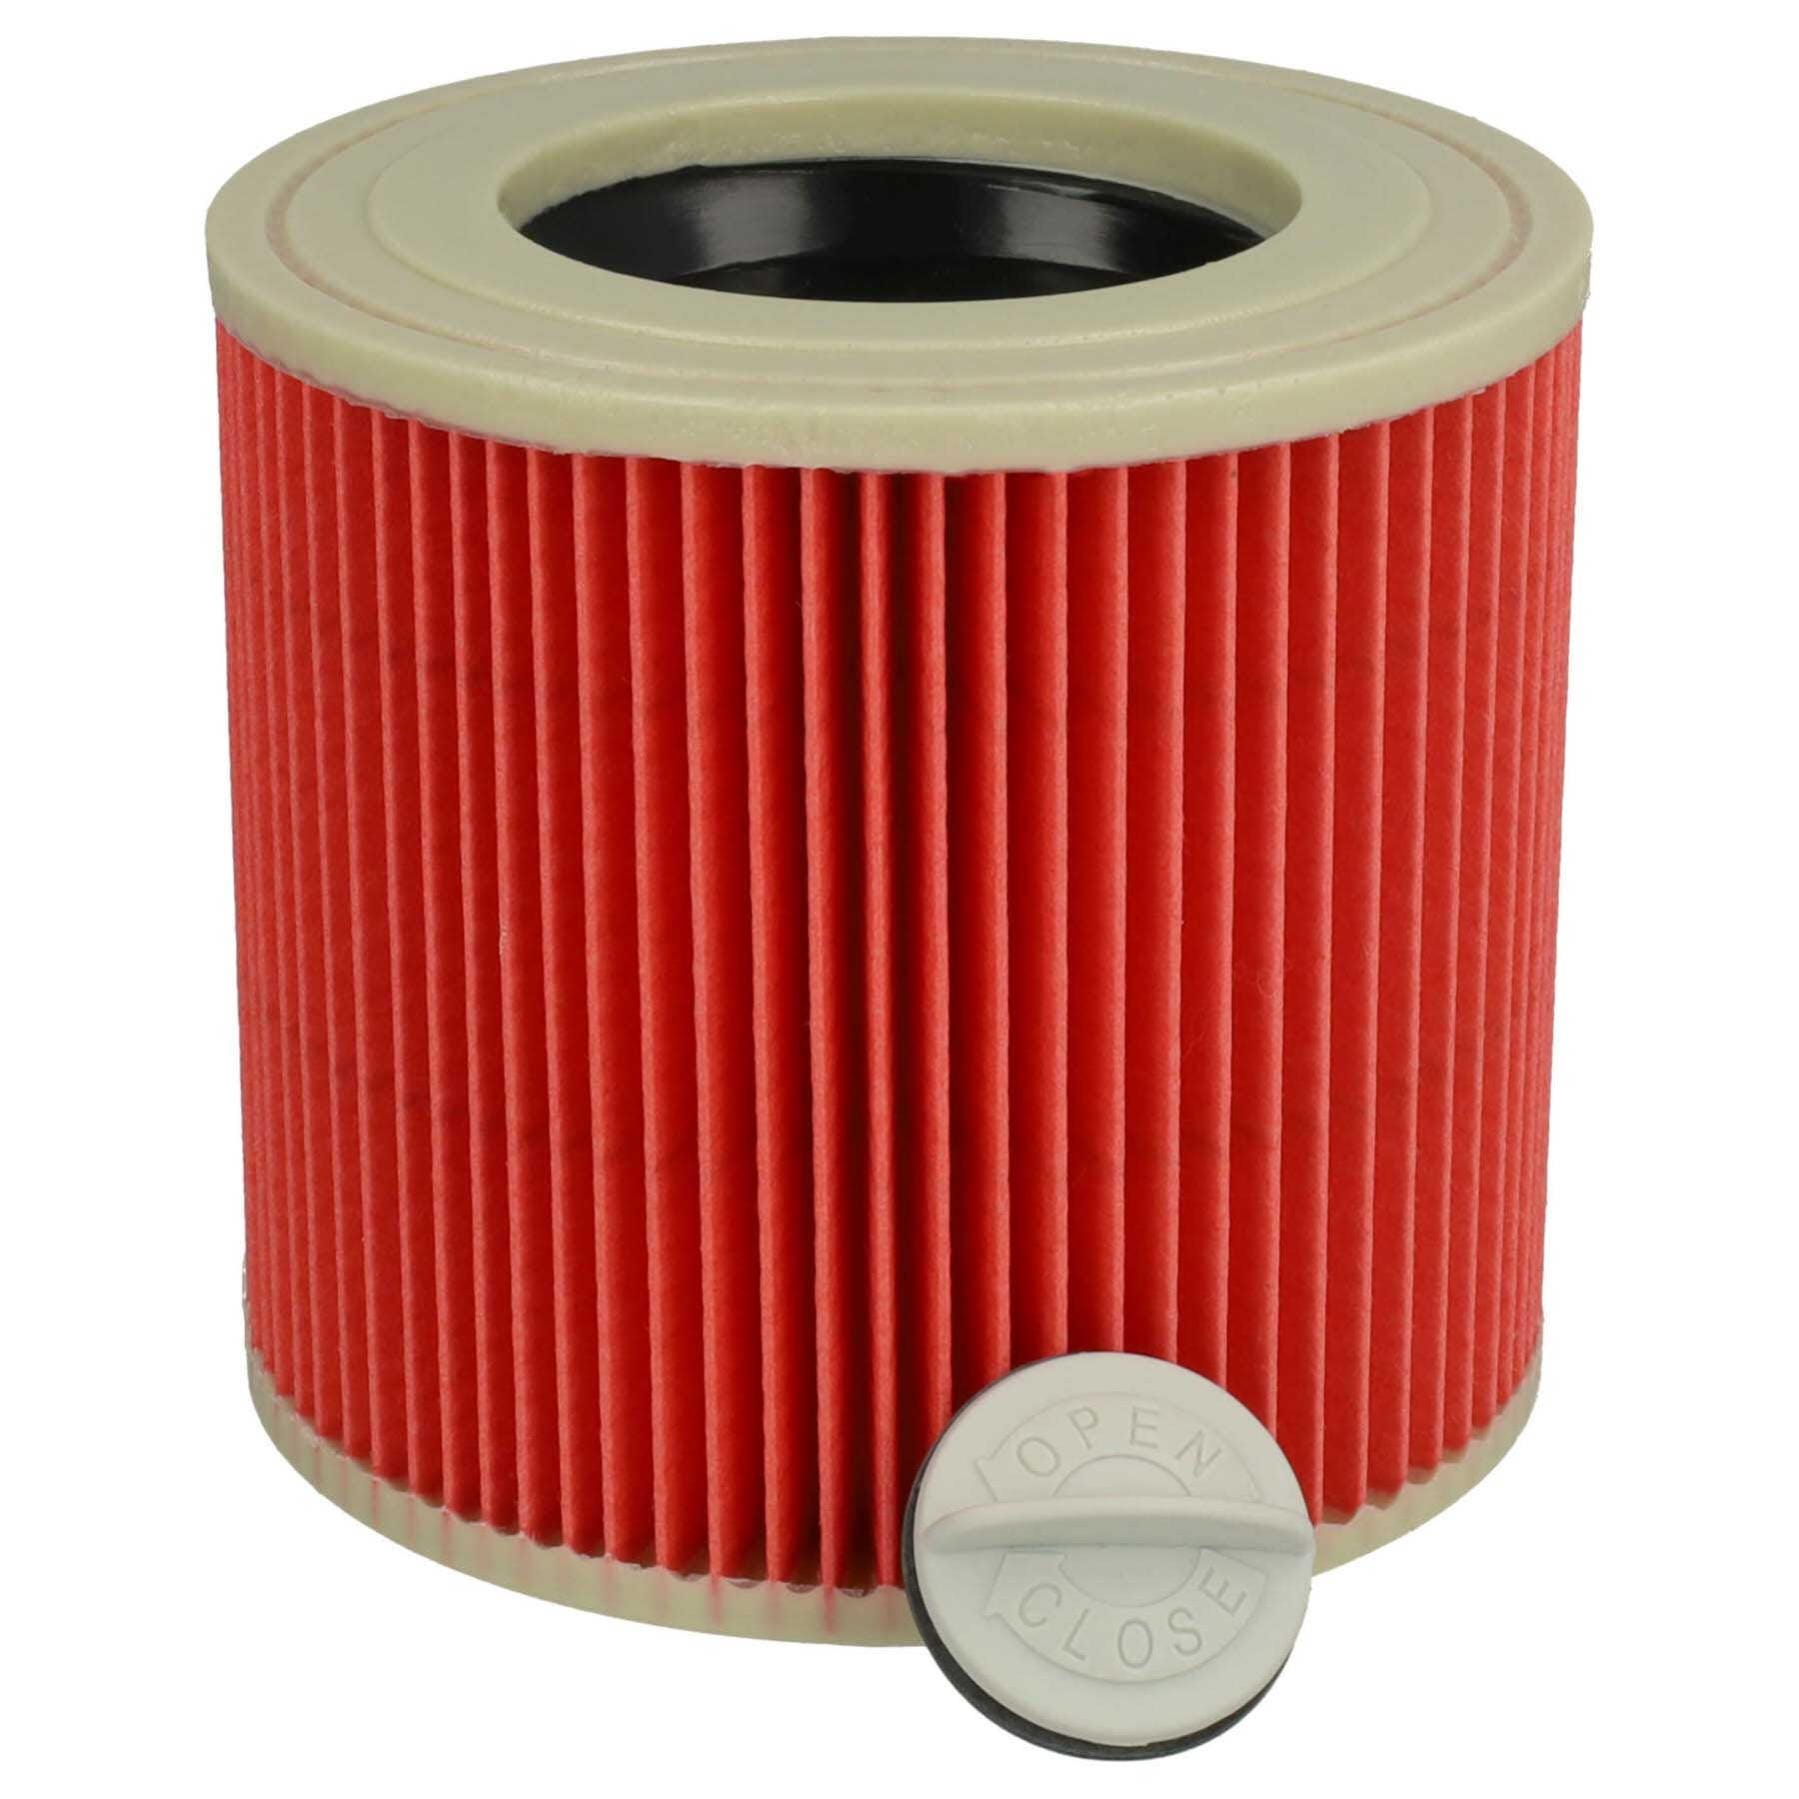 Vhbw Filtre à cartouche remplacement pour Kärcher 2.863-303.0, 6.414-547.0,  6.414-552.0 pour aspirateur à sec ou humide - Filtre plissé, rouge